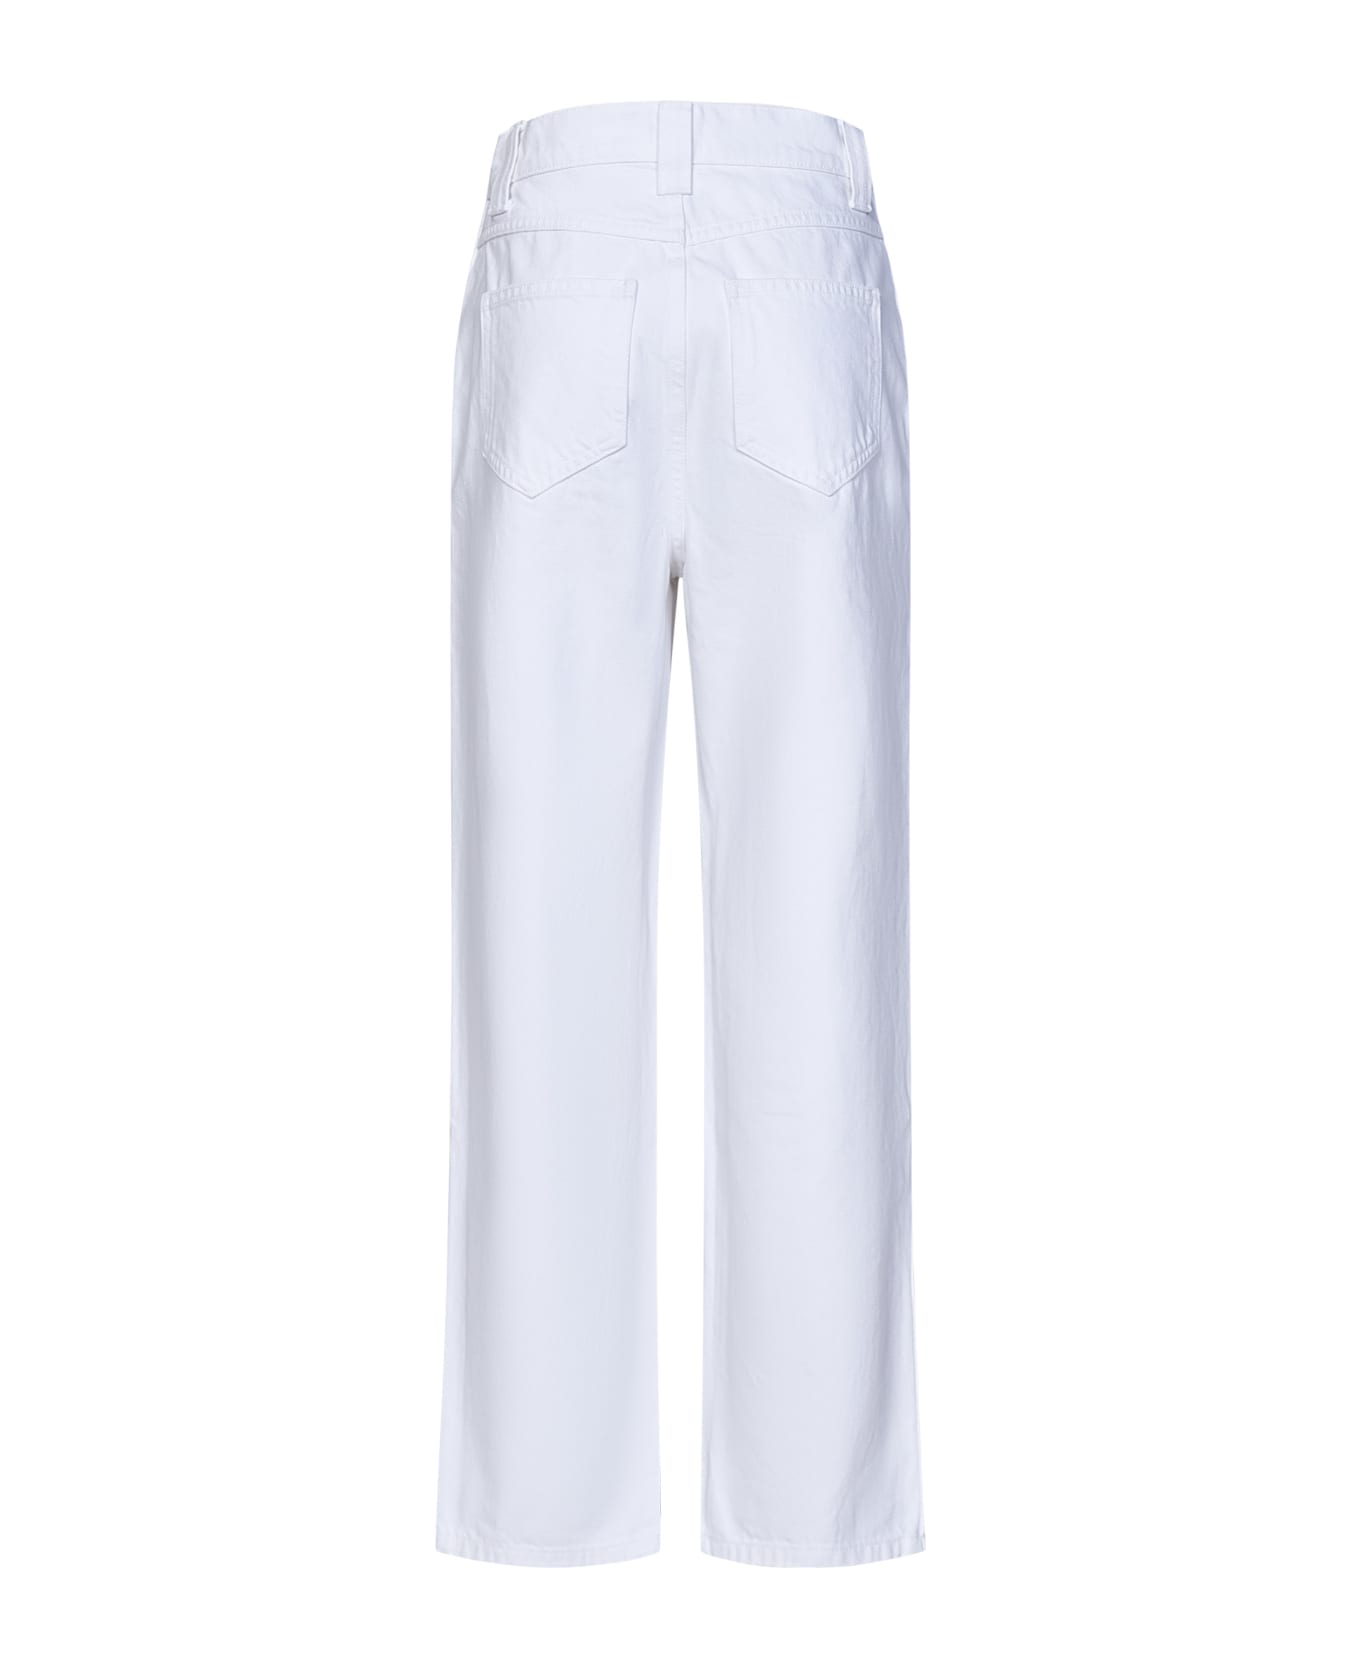 Khaite Ny Shalbi Jeans - White